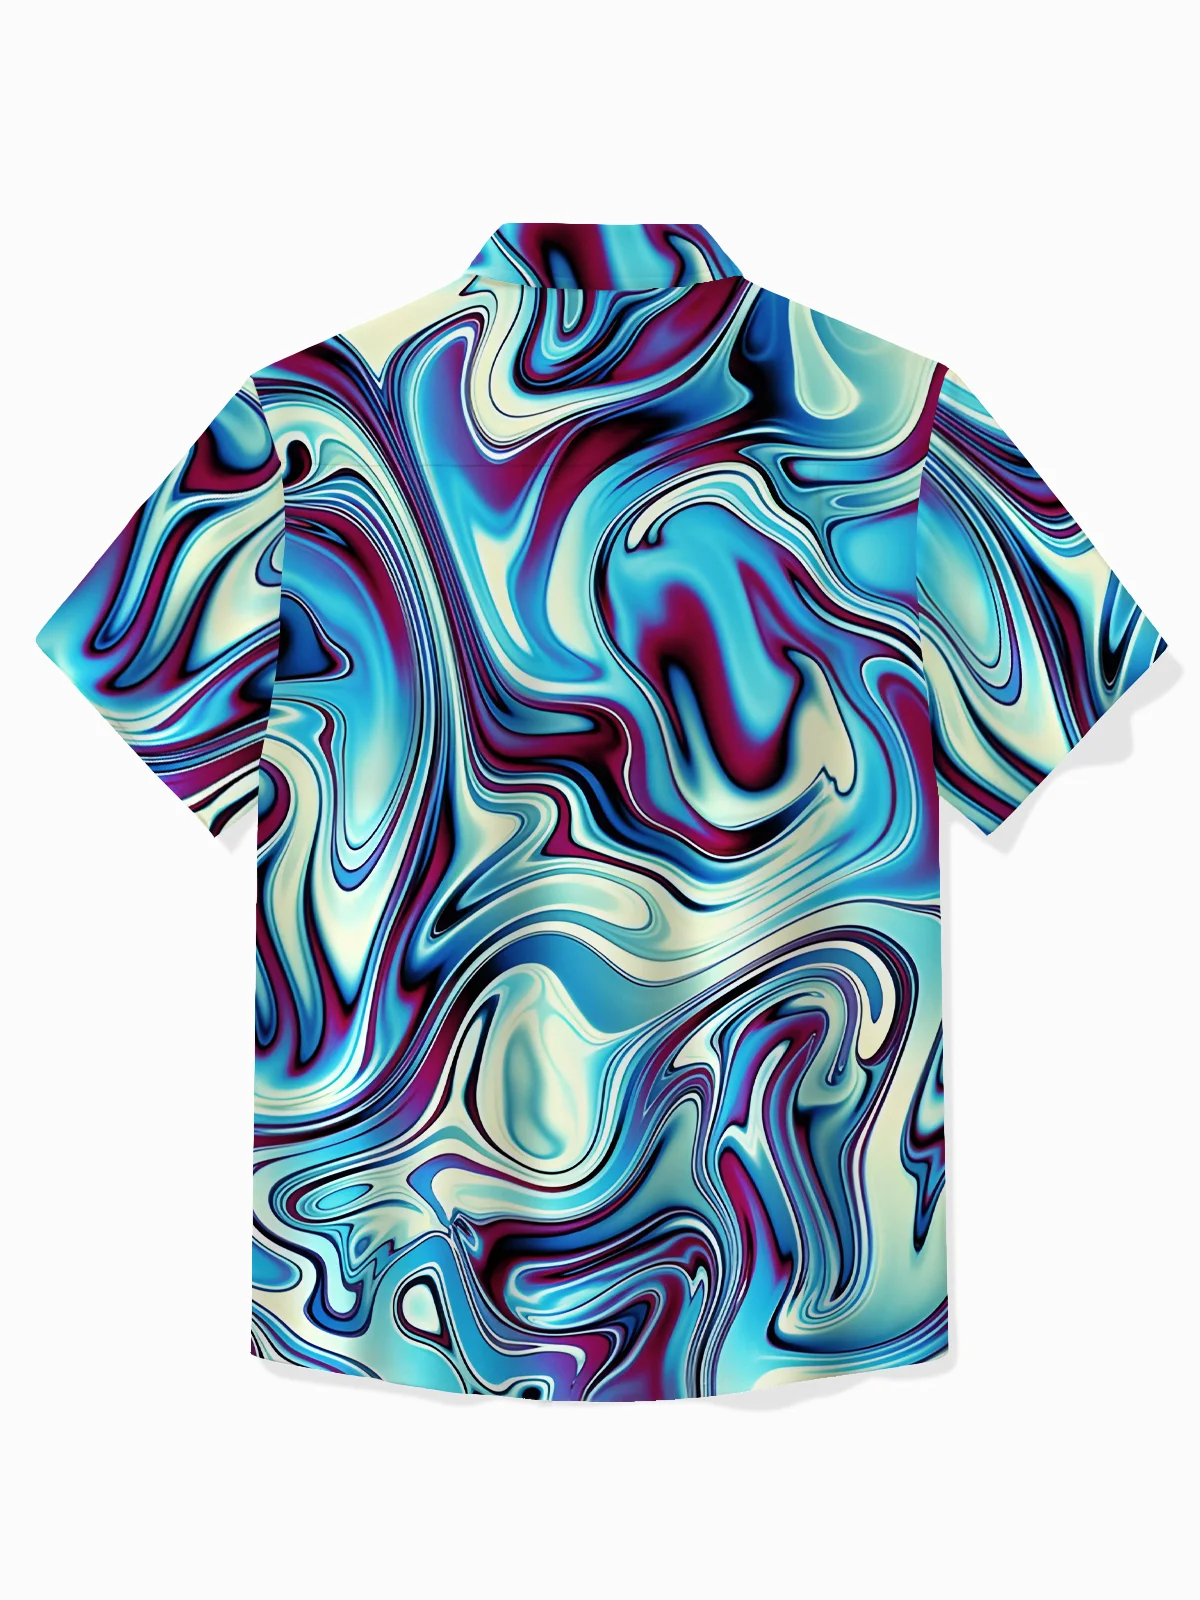 Royaura® Retro Psychedelic Style Men's Hawaiian Shirt Abstract Liquid Texture Print Pocket Camping Shirt